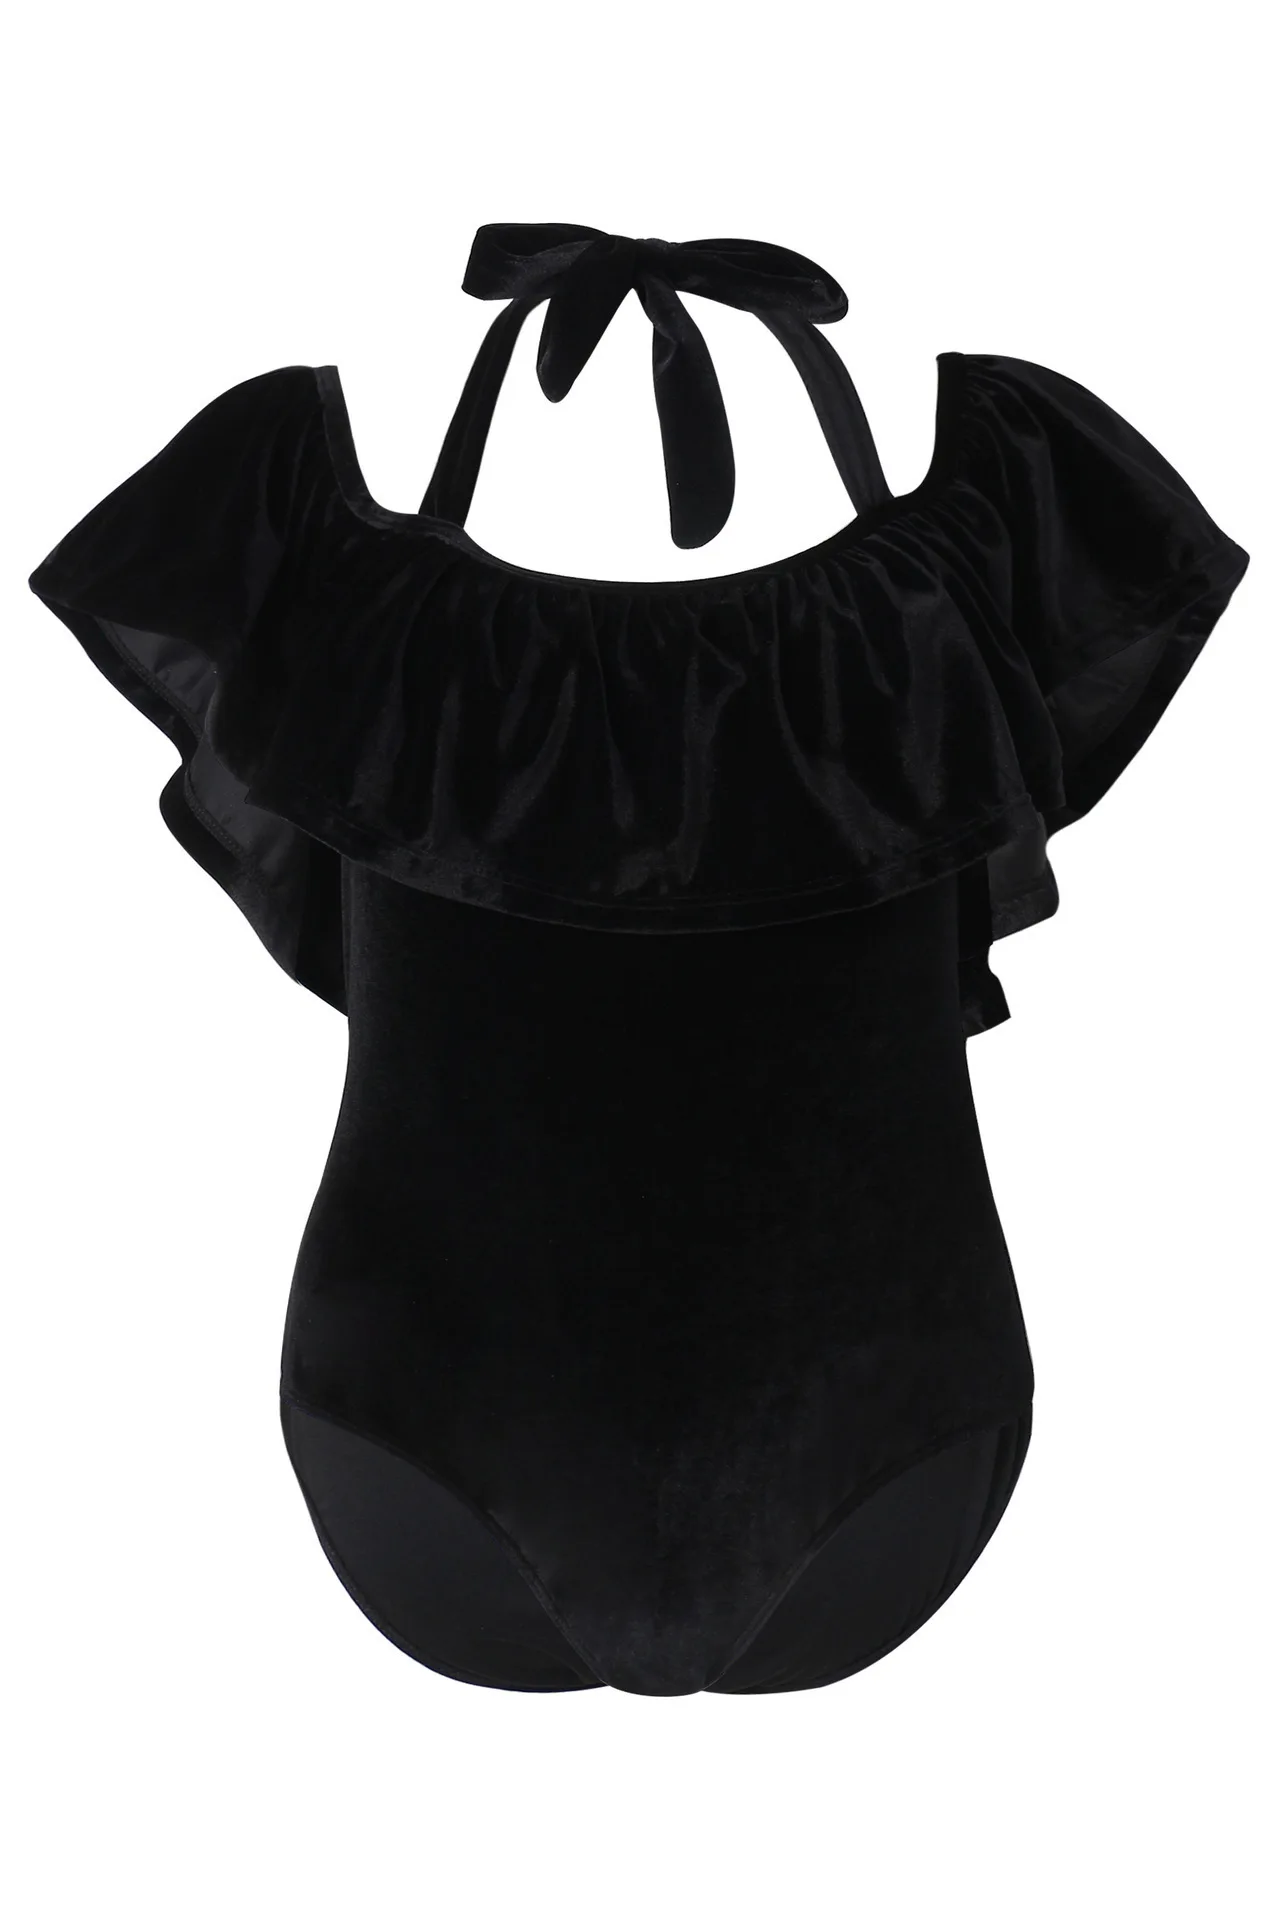 Бархатный Цельный купальник плюс размер купальник женский купальник с открытыми плечами сексуальный черный купальный костюм большой размер Женская пляжная одежда рубашка